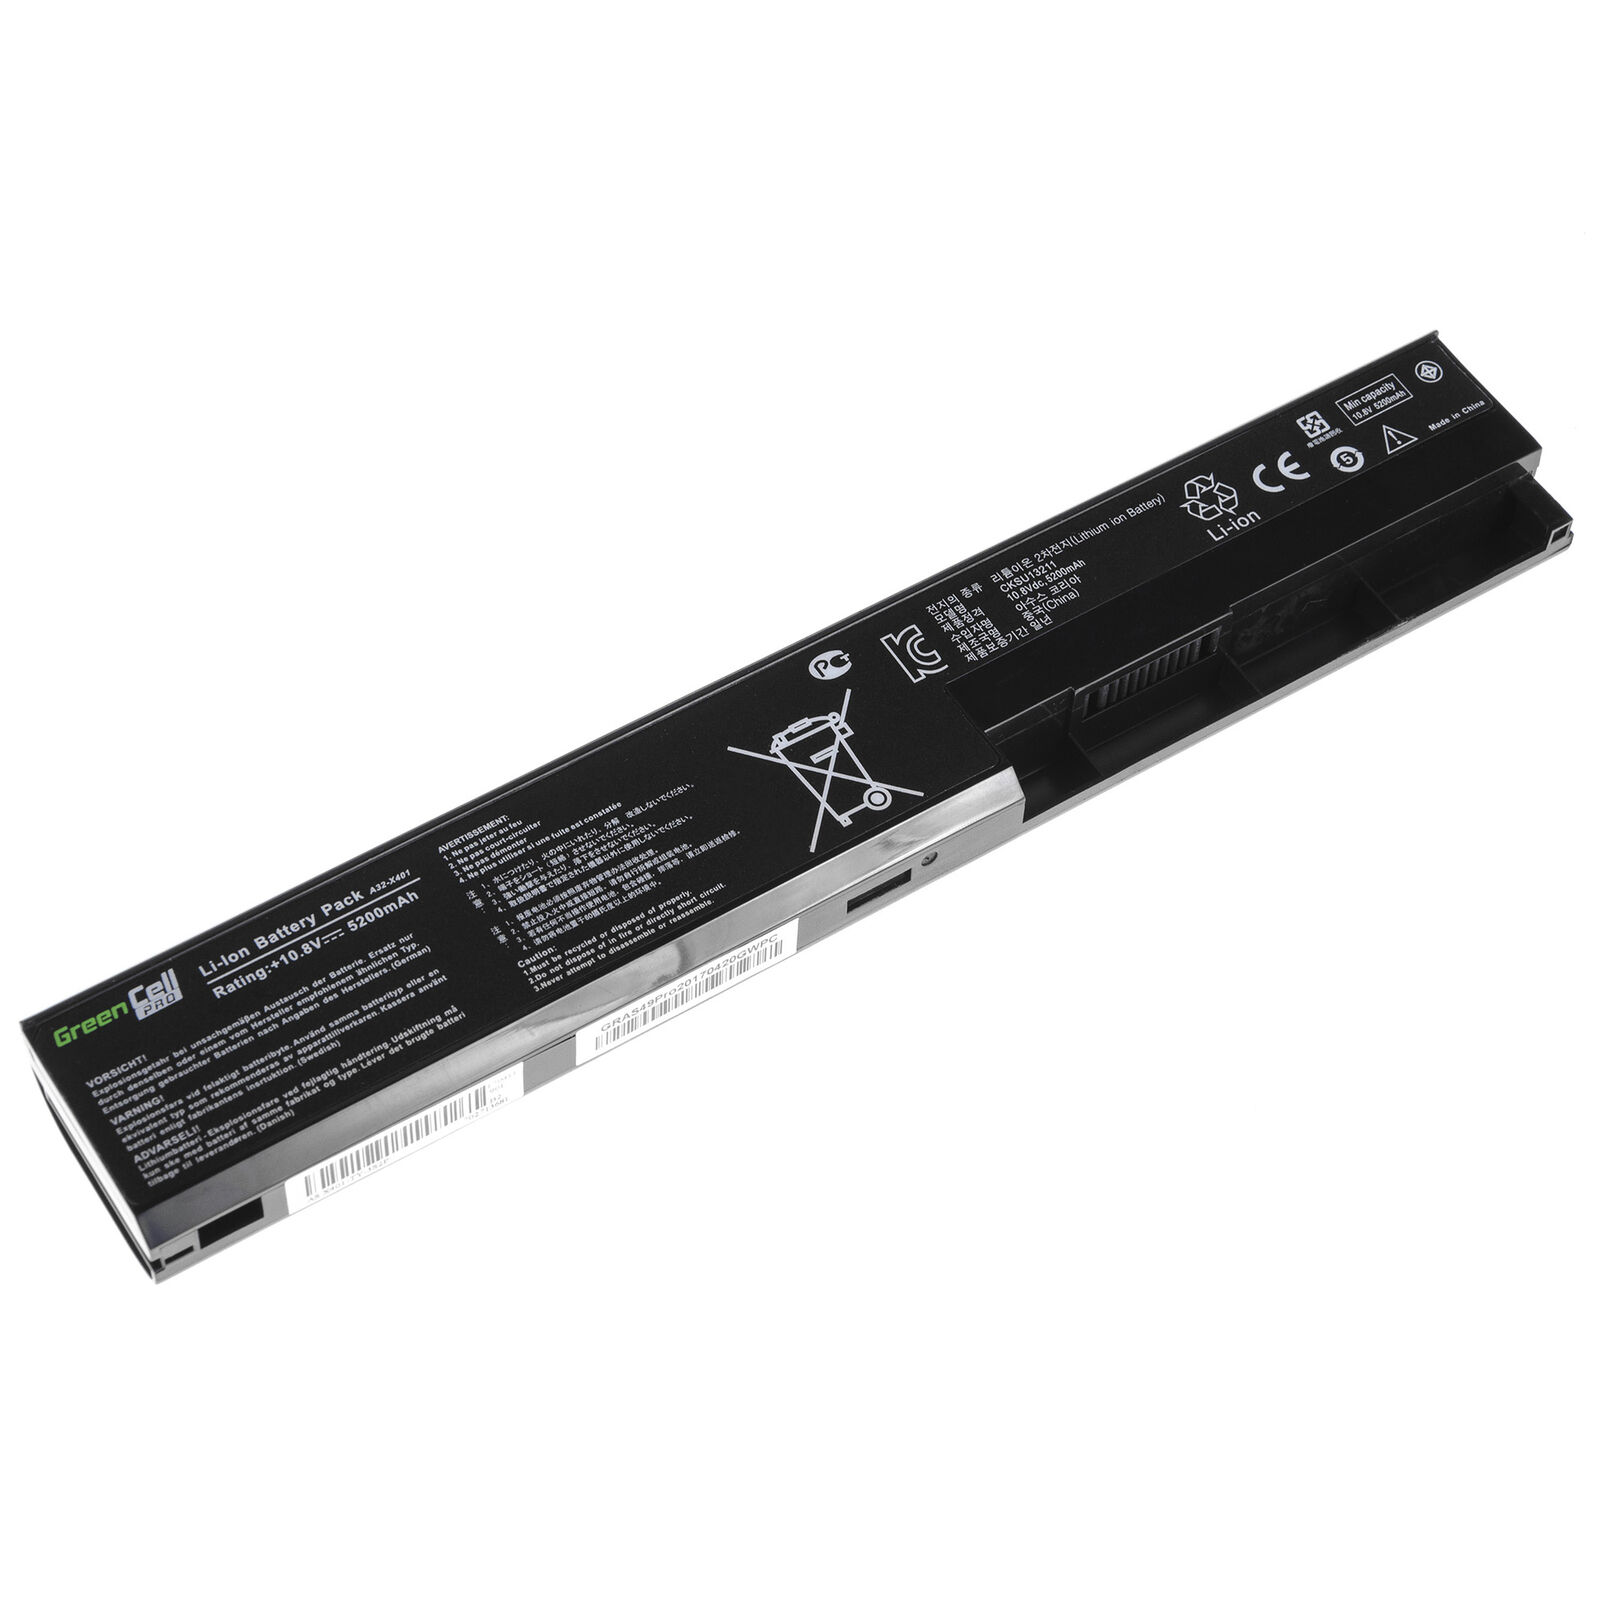 Bateria para Asus X301 X301A X301U X501 X501A X501U A31-X401 A41-X401